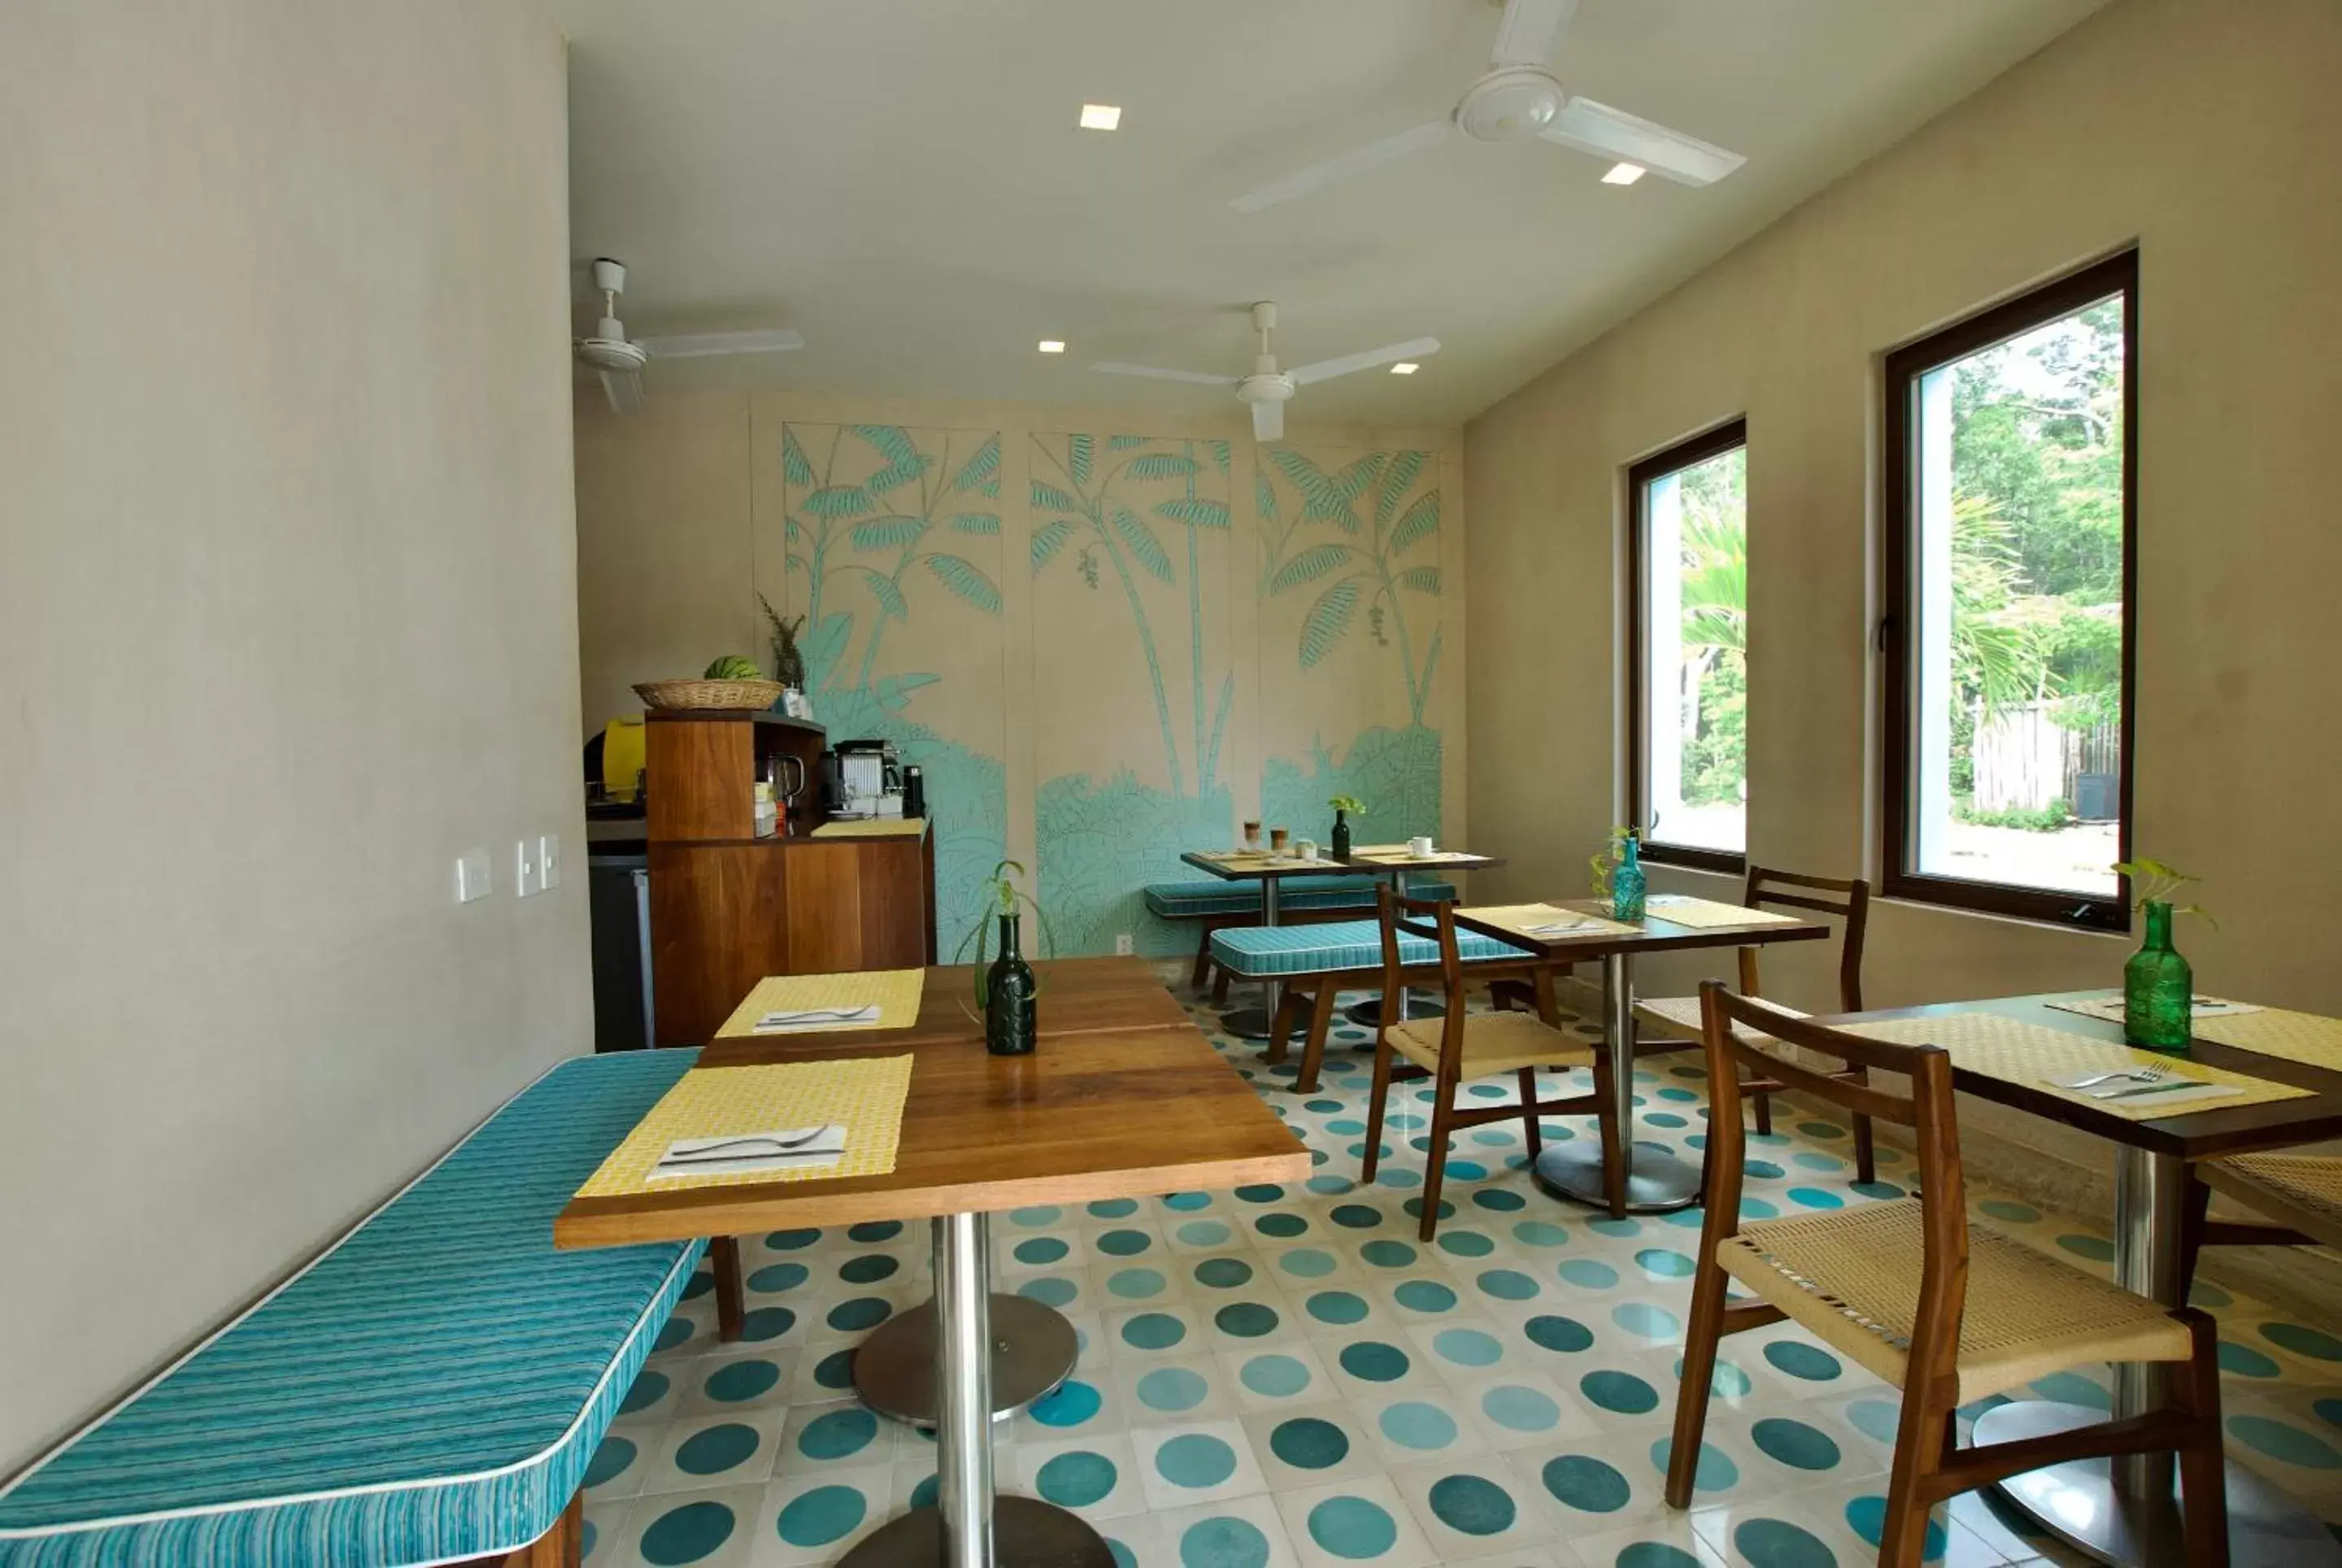 Restaurant/places to eat in Hotel Tiki Tiki Tulum